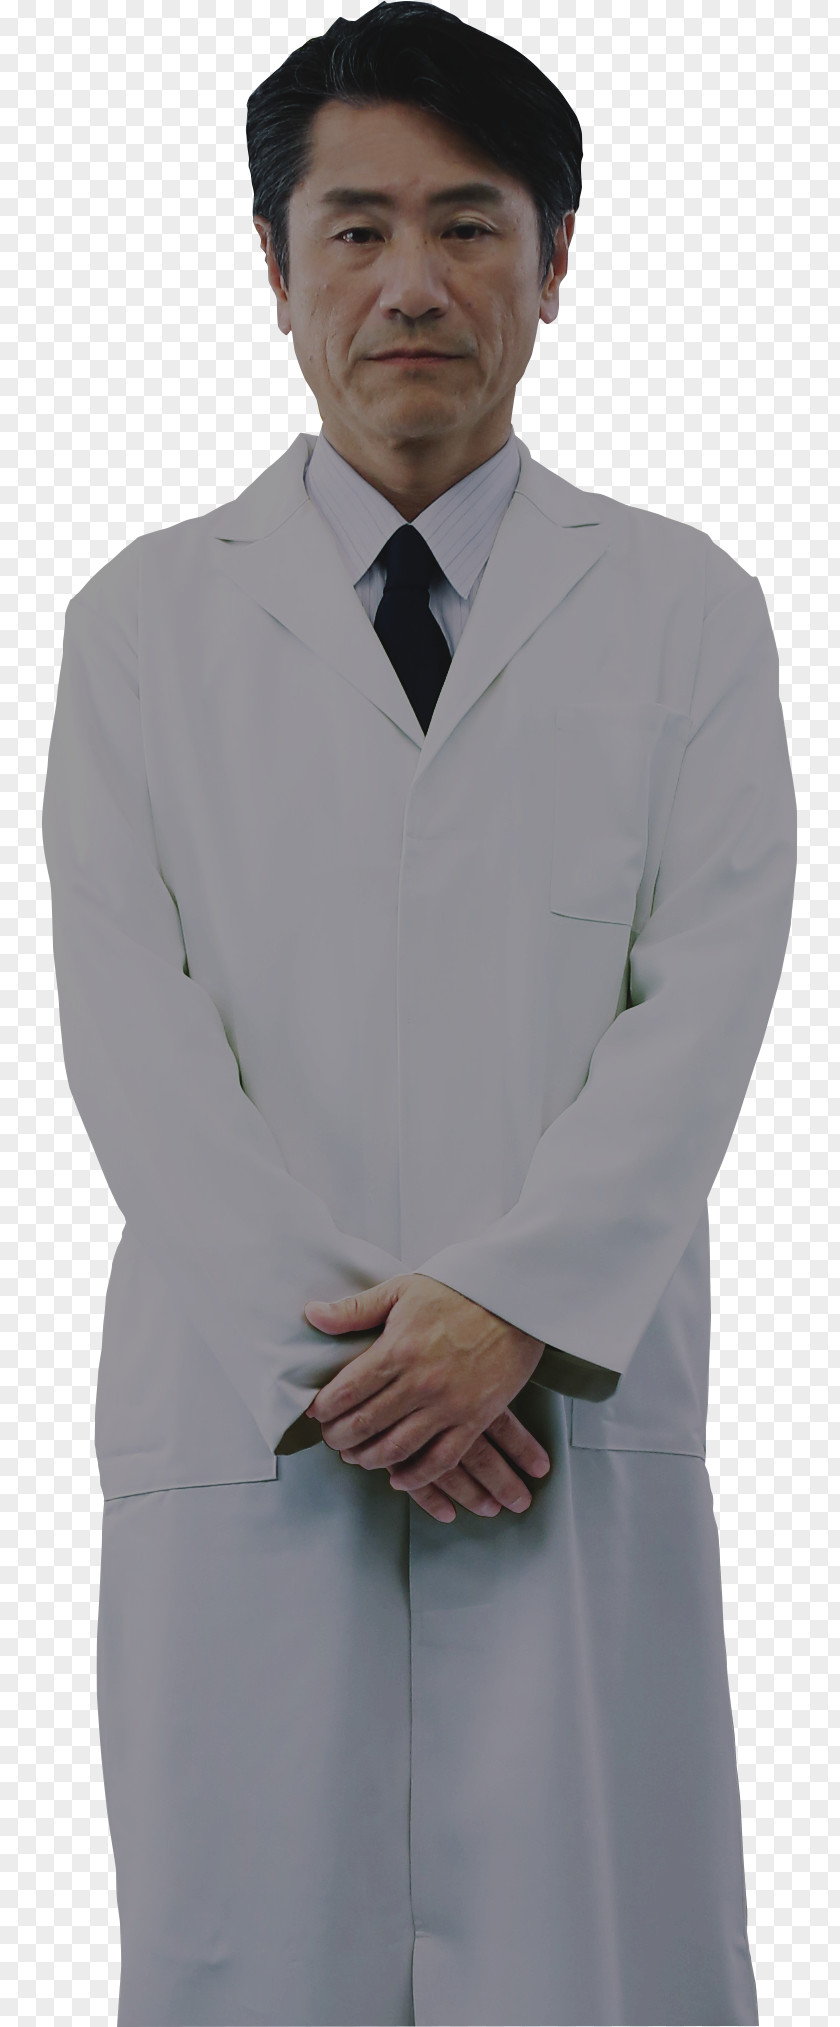 Lab Tuxedo Chef's Uniform White-collar Worker Laborer Blazer PNG